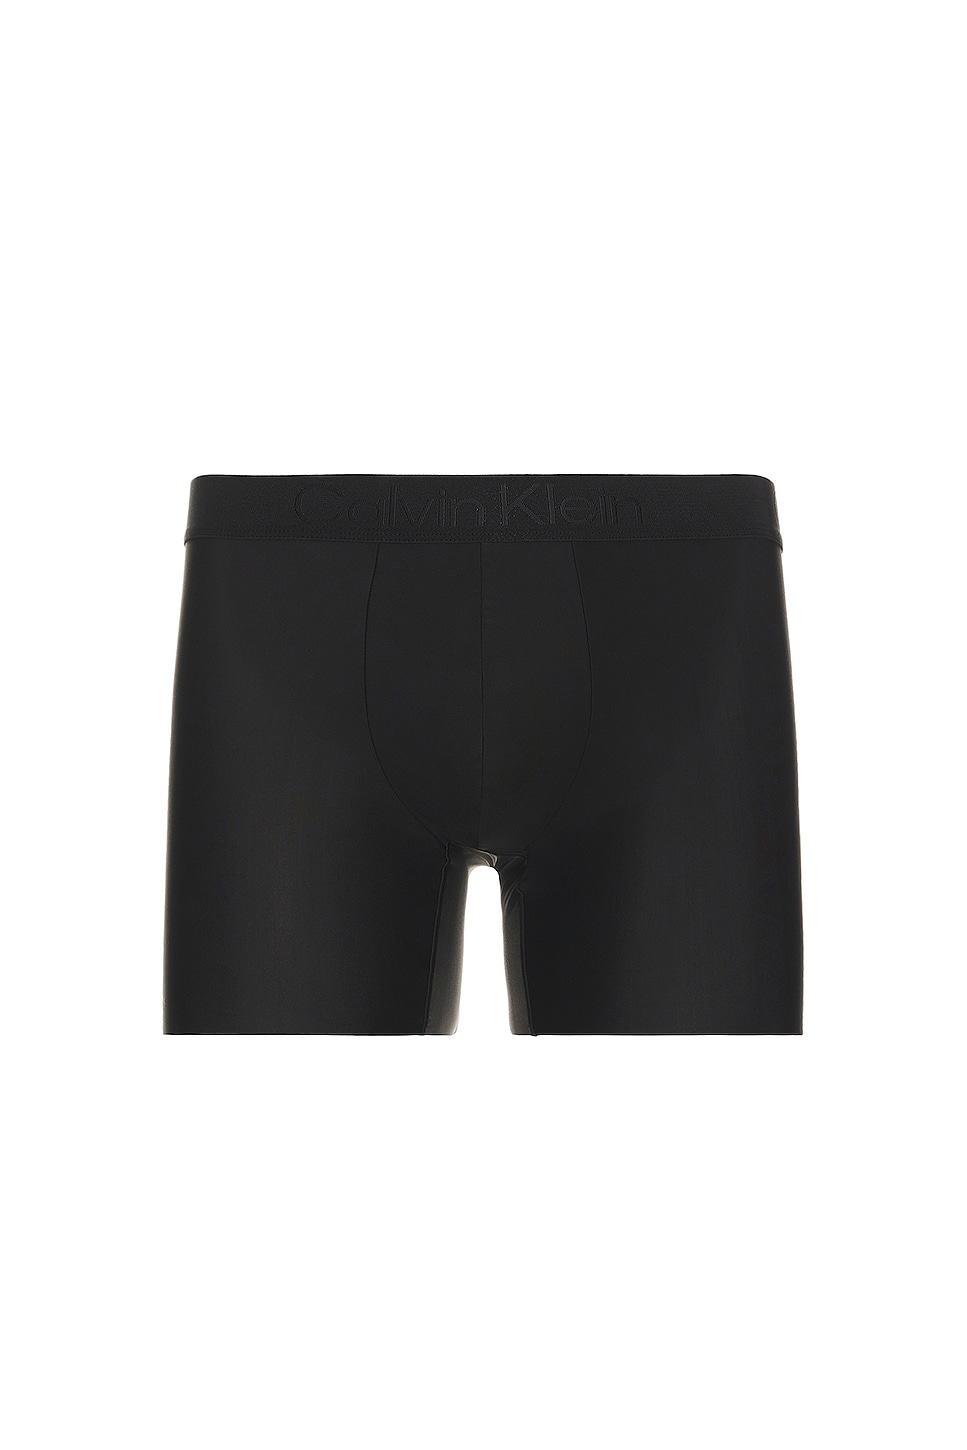 Calvin Klein Underwear | CK Brief REVOLVE Black Boxer Premium Black in Micro